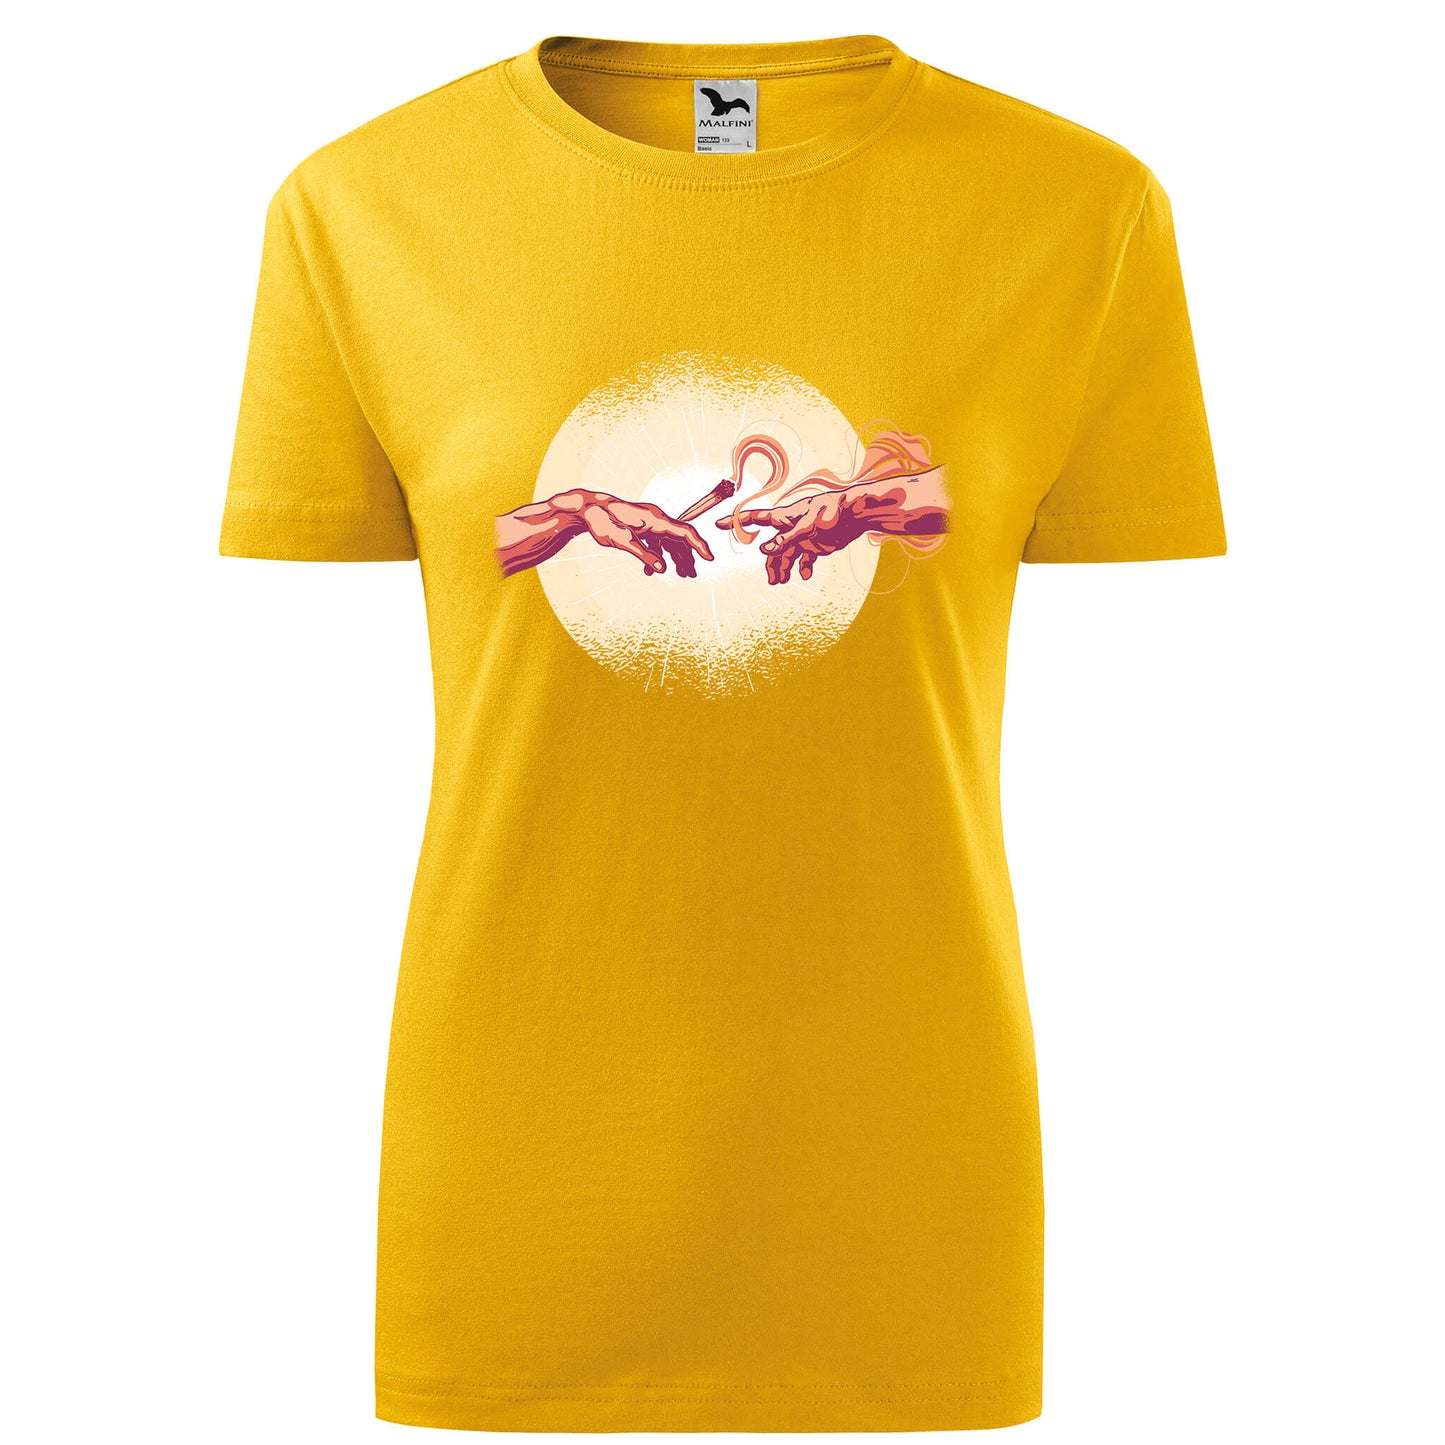 Creation joint t-shirt - rvdesignprint